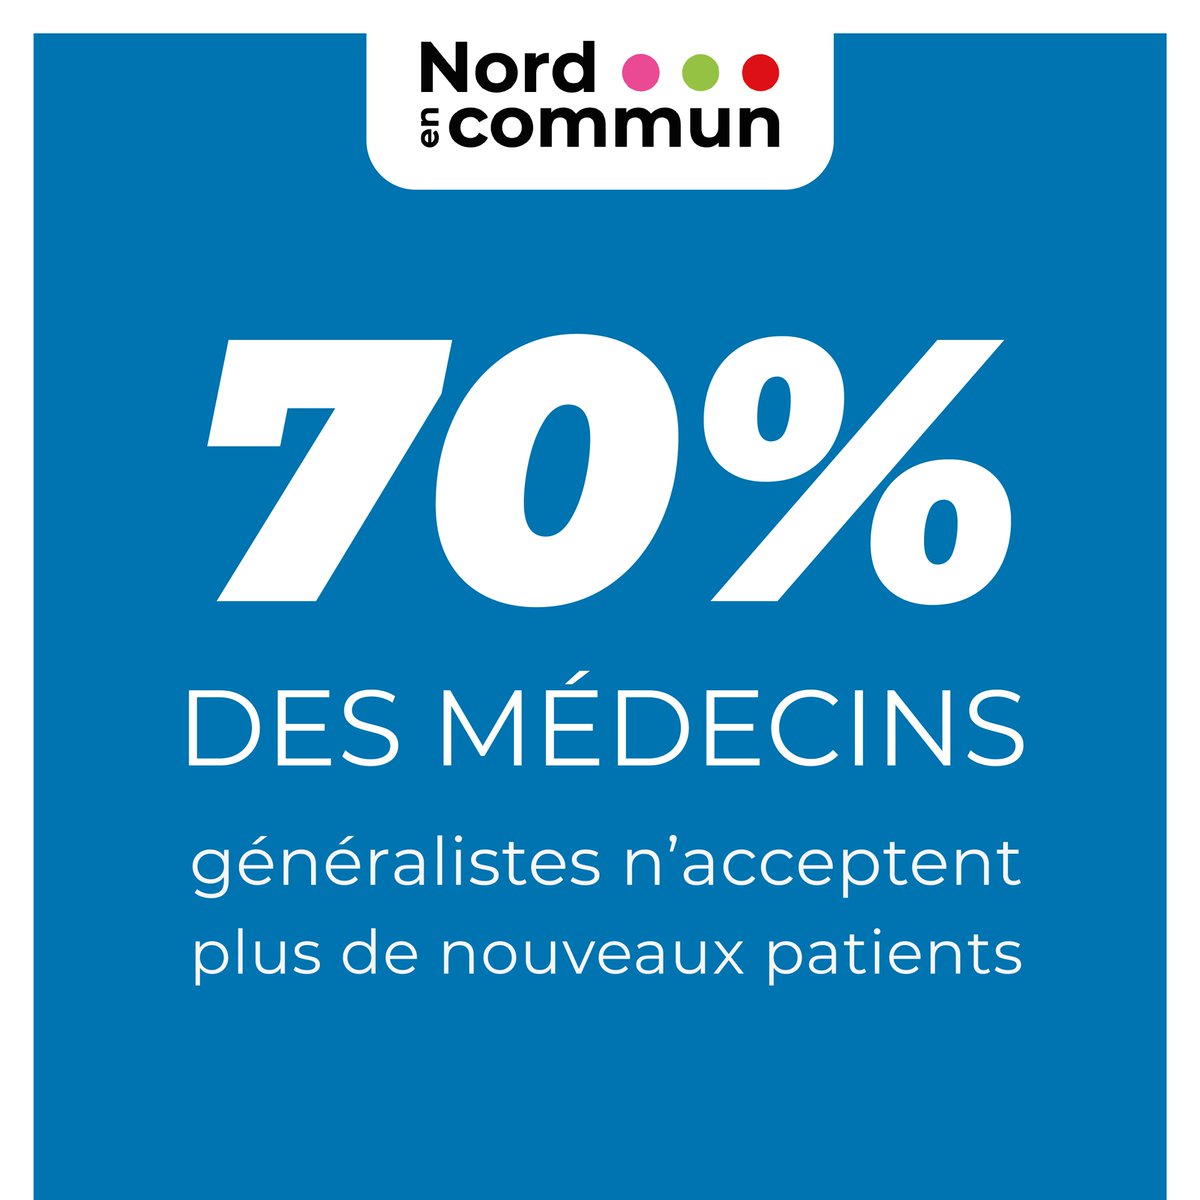 1/6 -  #Santé 70% des médecins généralistes n’acceptent plus de nouveaux patients. #Nordencommun